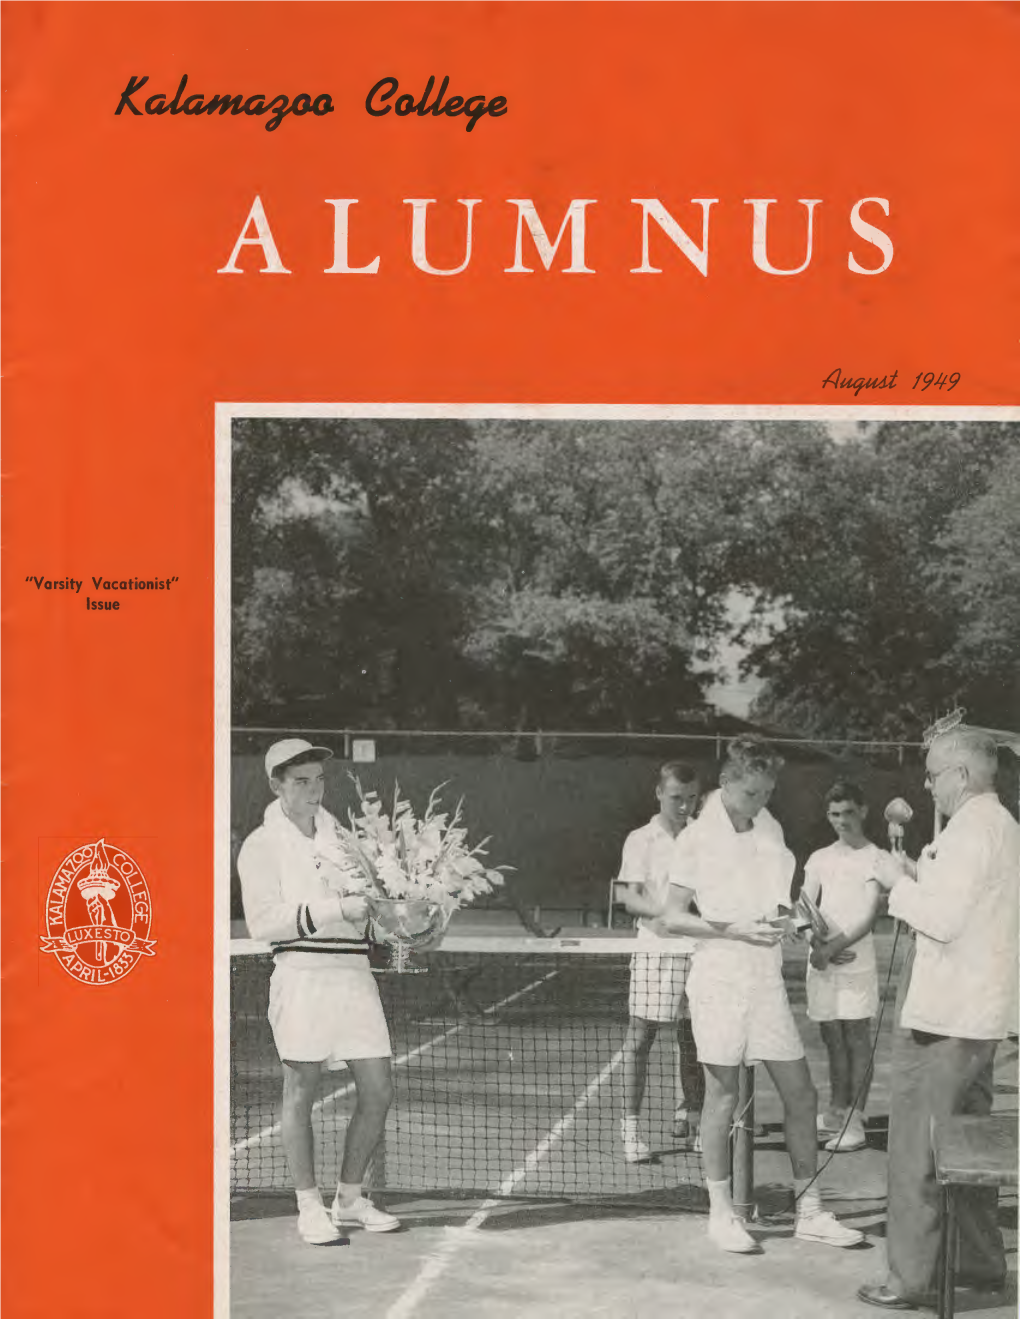 Kalamazoo College Alumnus (August, 1949)